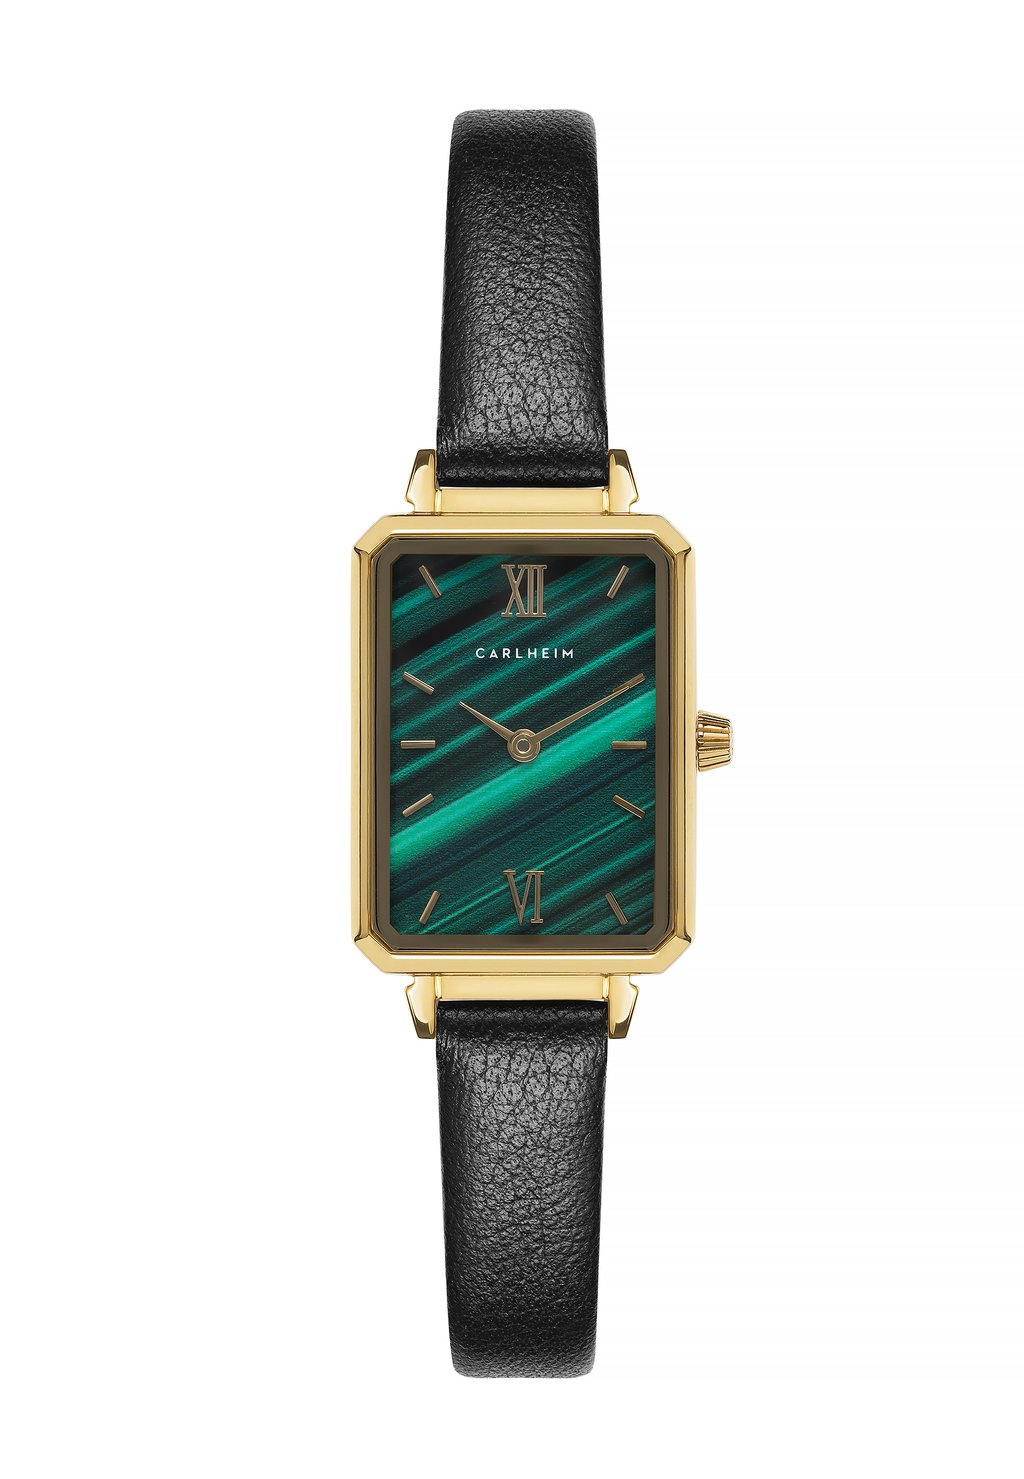 Часы PETIT MILA Carlheim, цвет gold green black